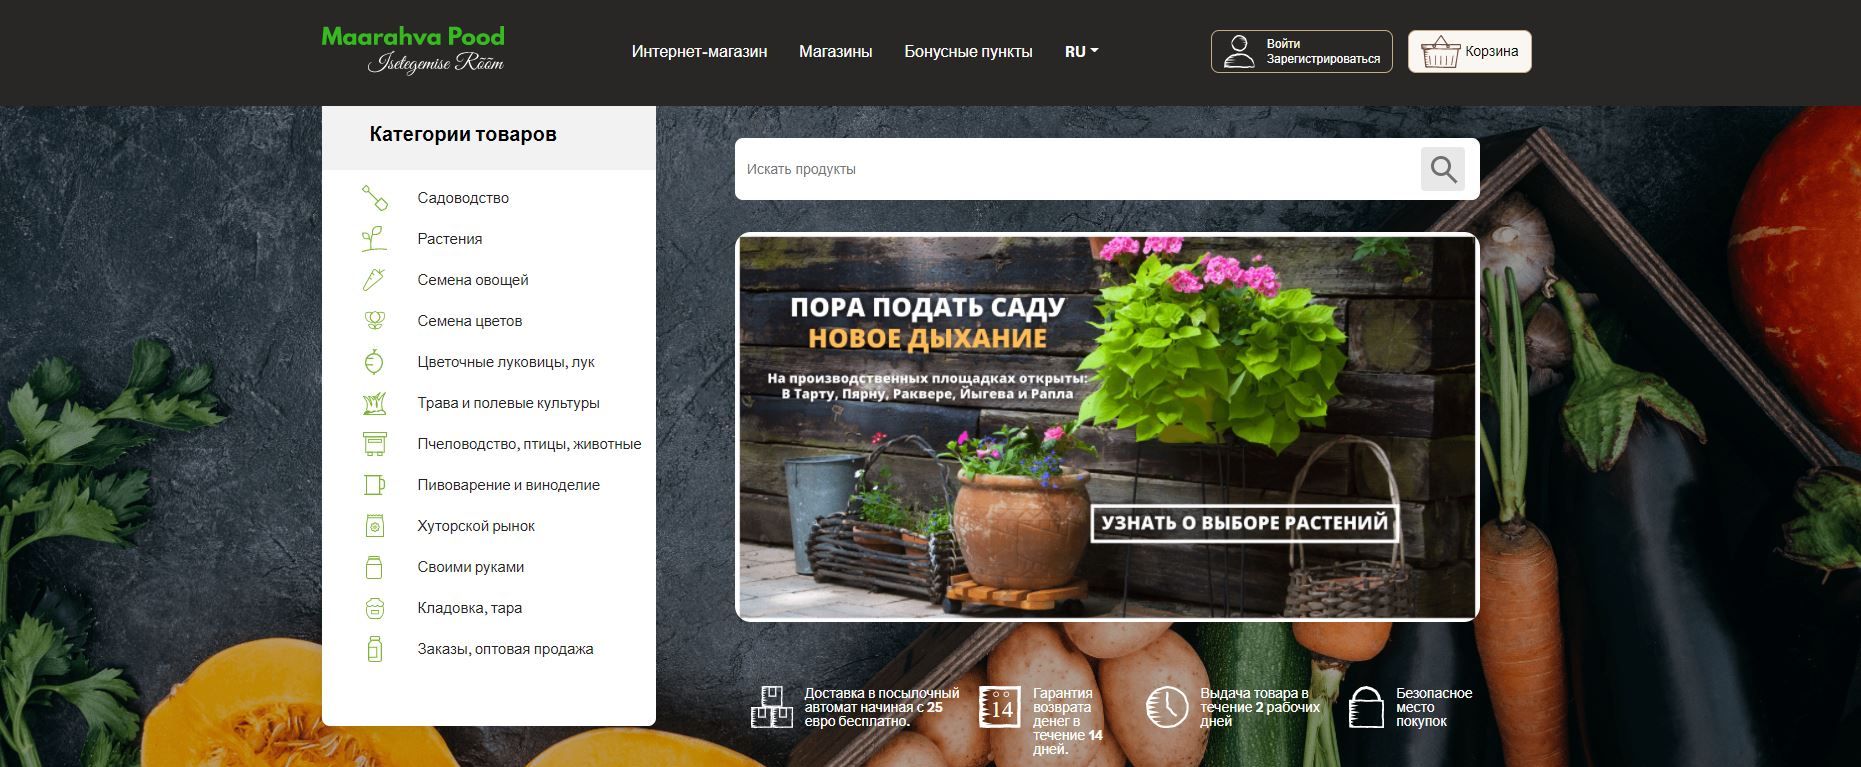 Projekti vahekokkuvõte: maarahvapood.ee veebisaidi ja tootekataloogi tõlkimine vene keelde